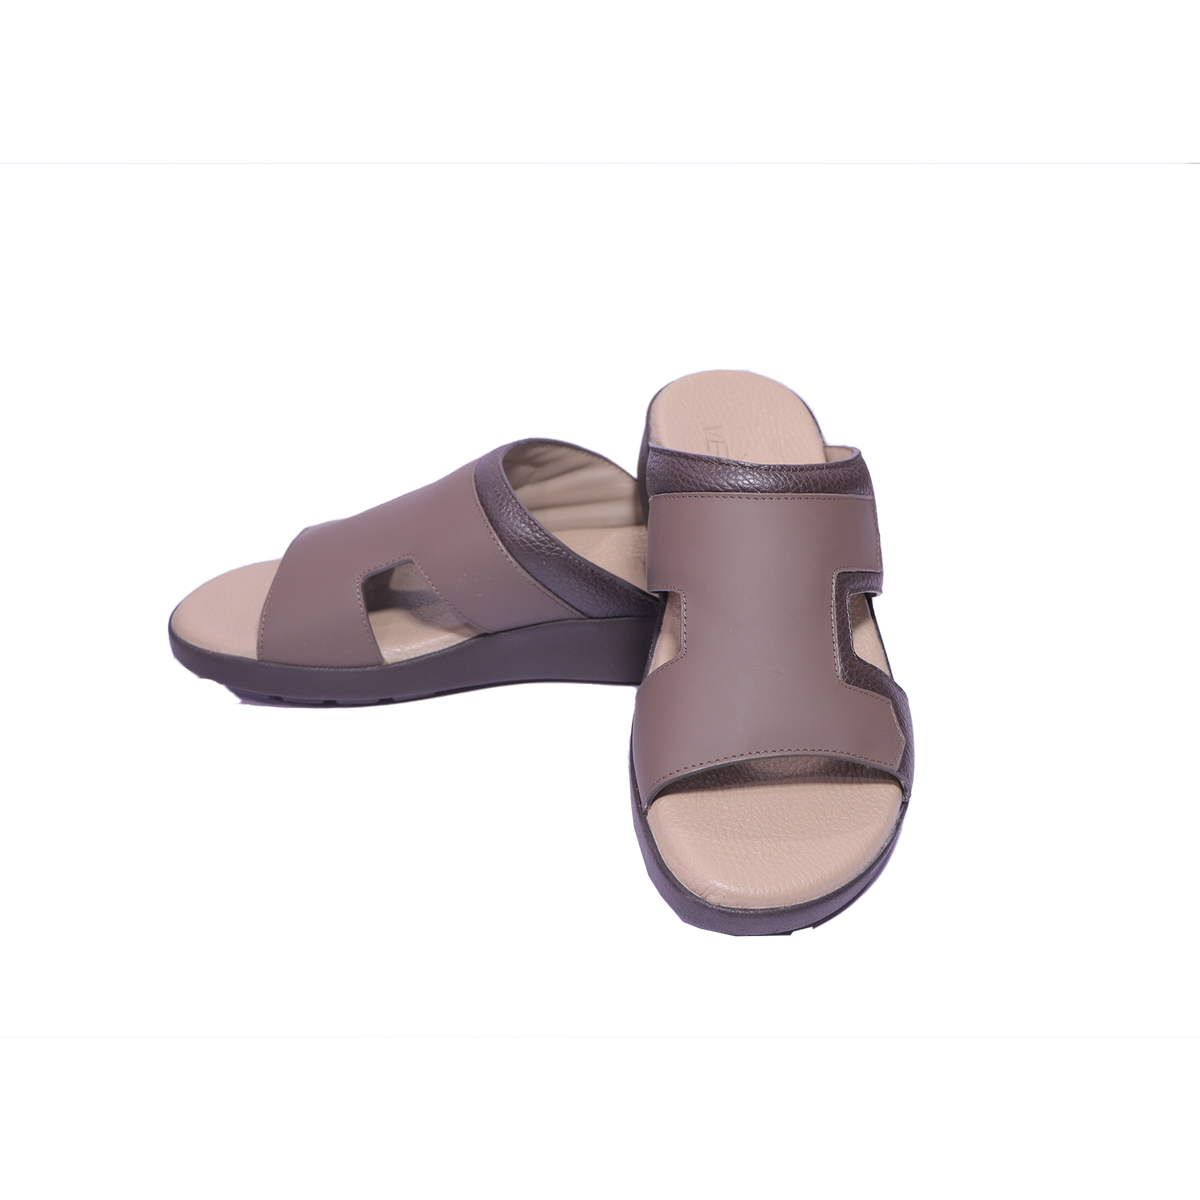 1612-127 - Veroni Sandal Shoes